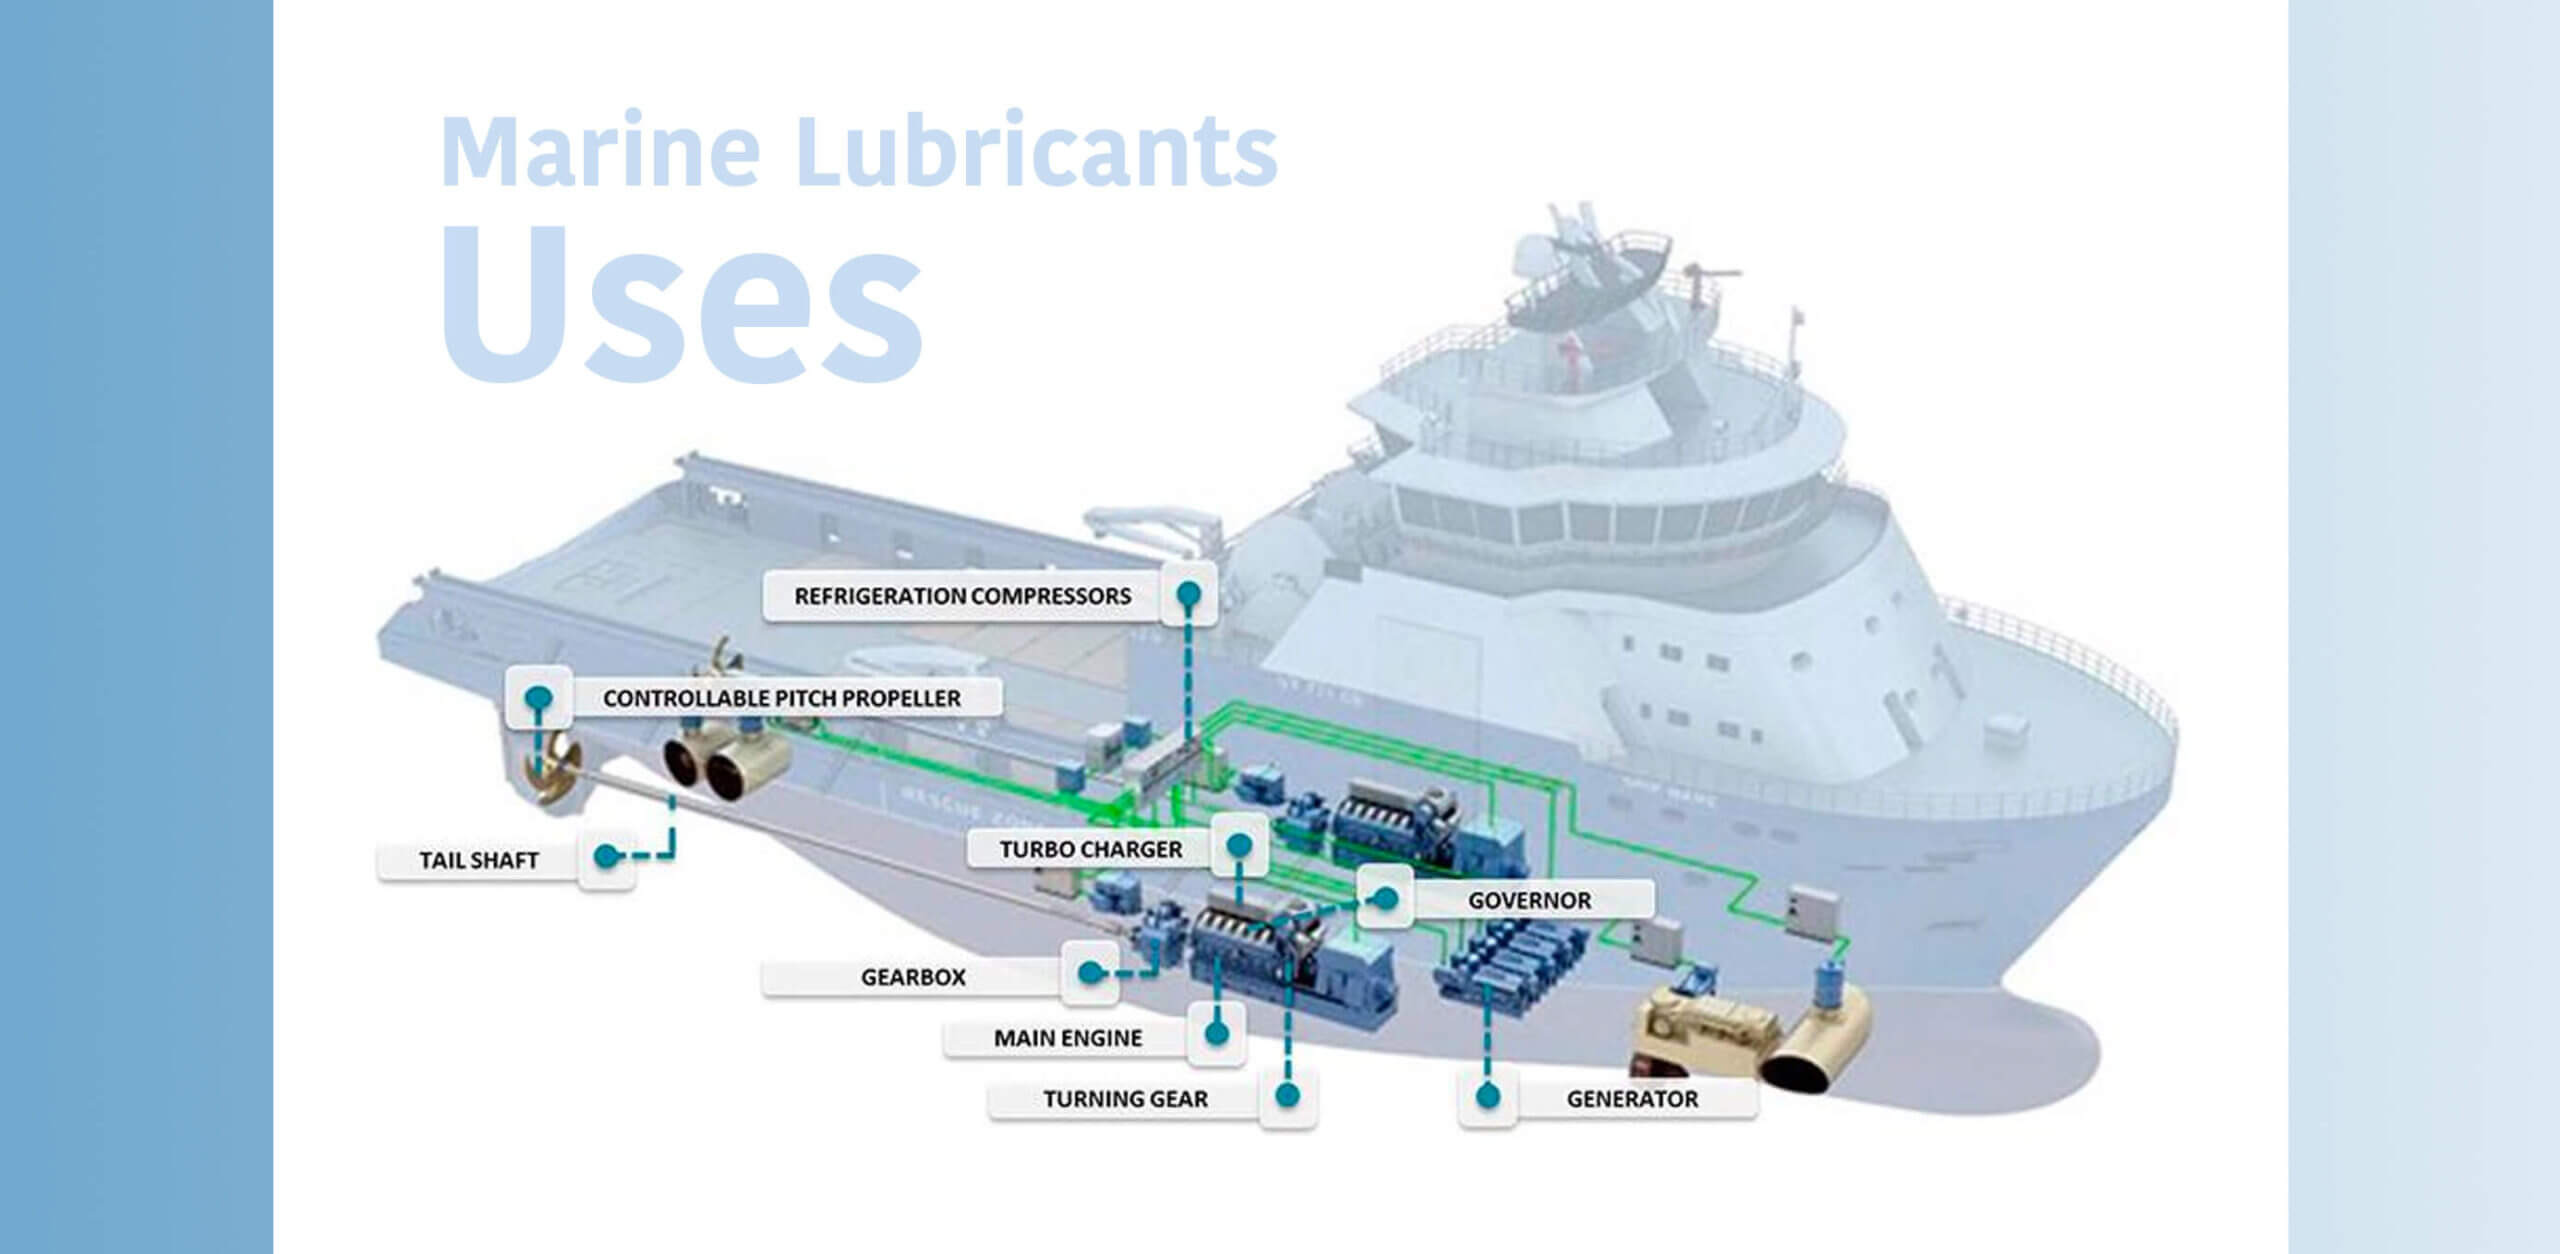 Marine Lubricants uses